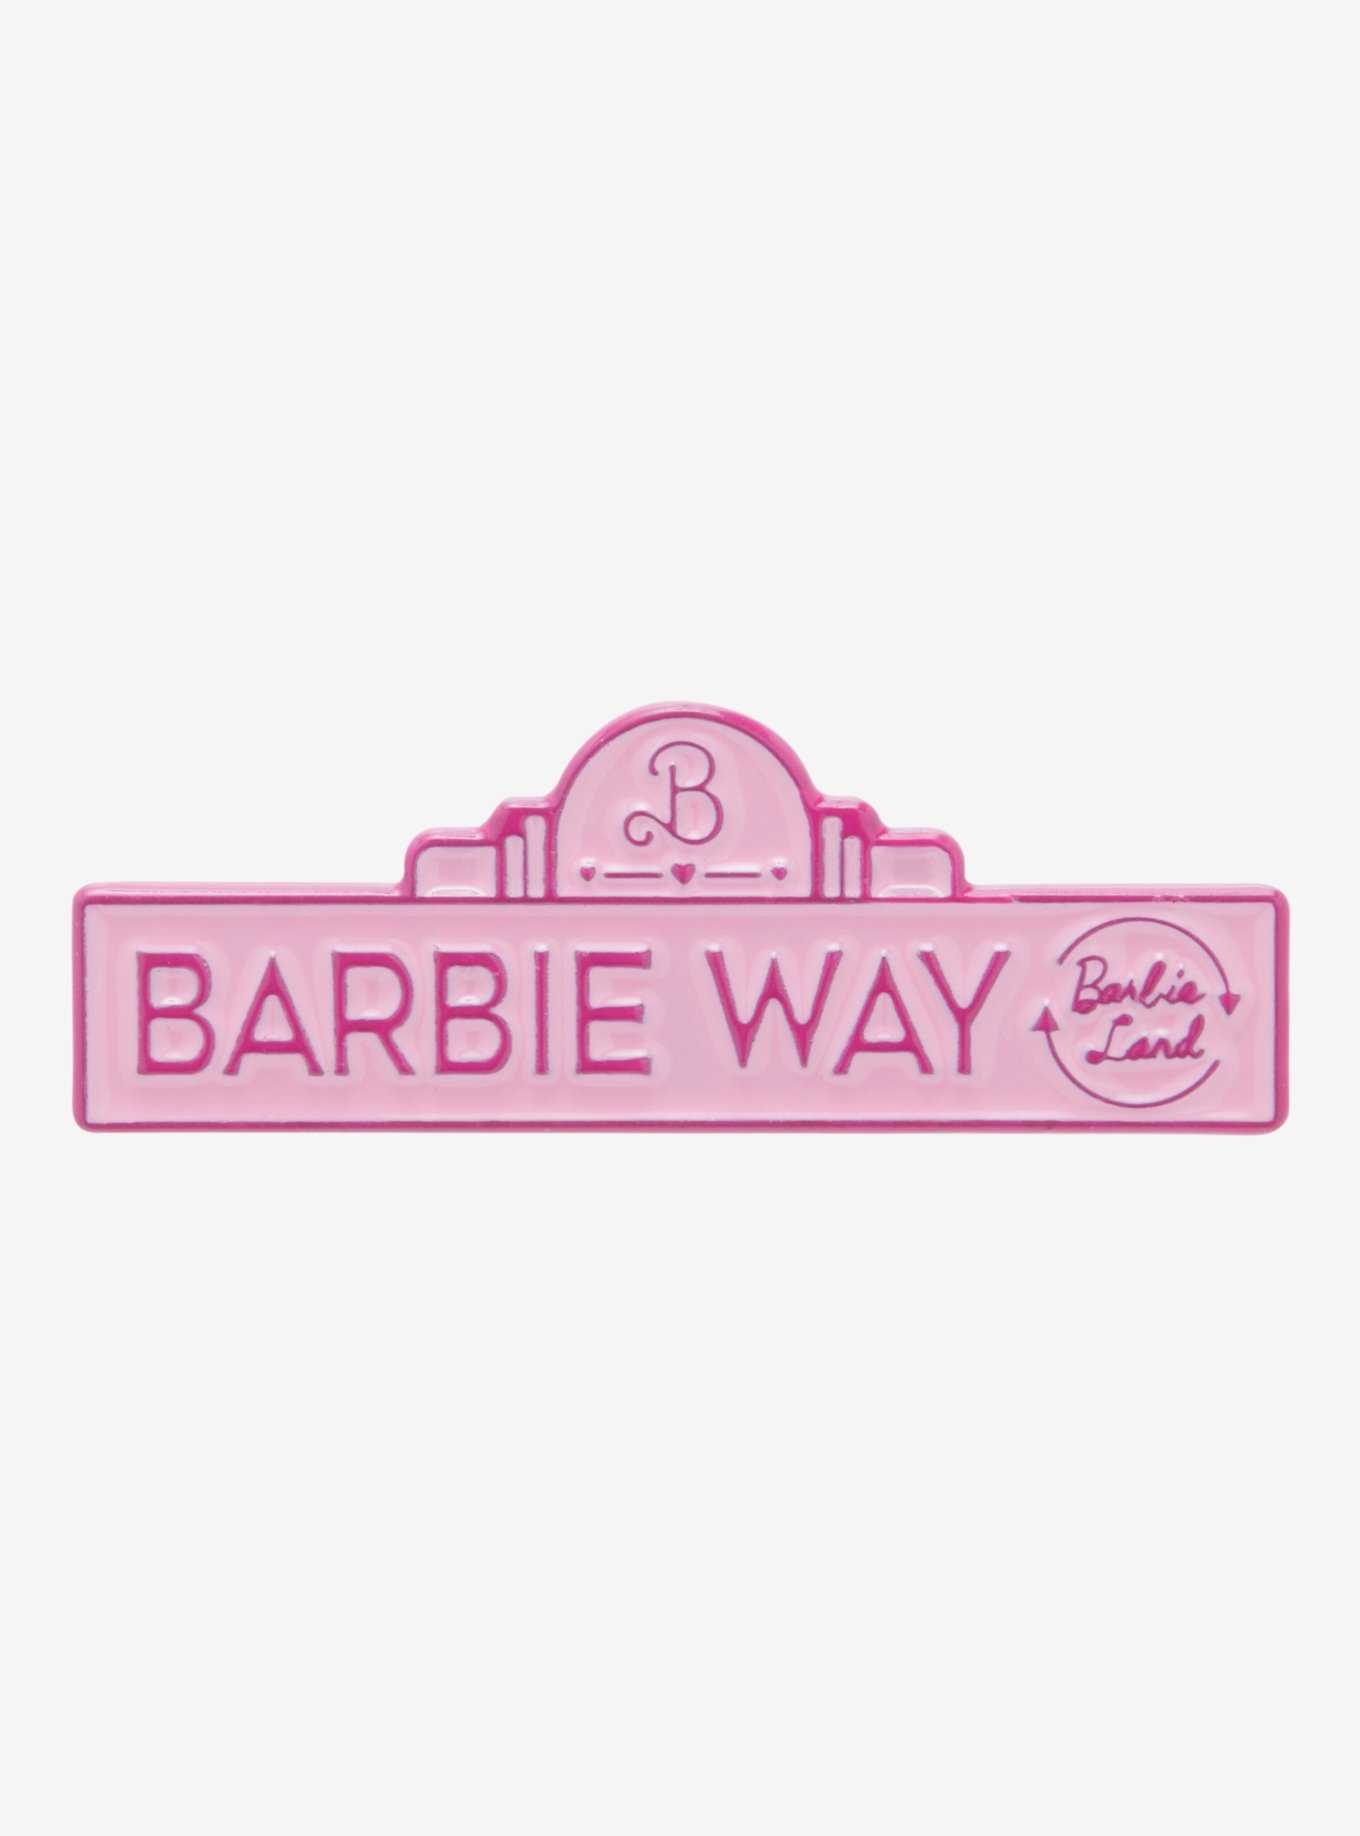 Retro Review: Site da Barbie – Mundo dos Animes